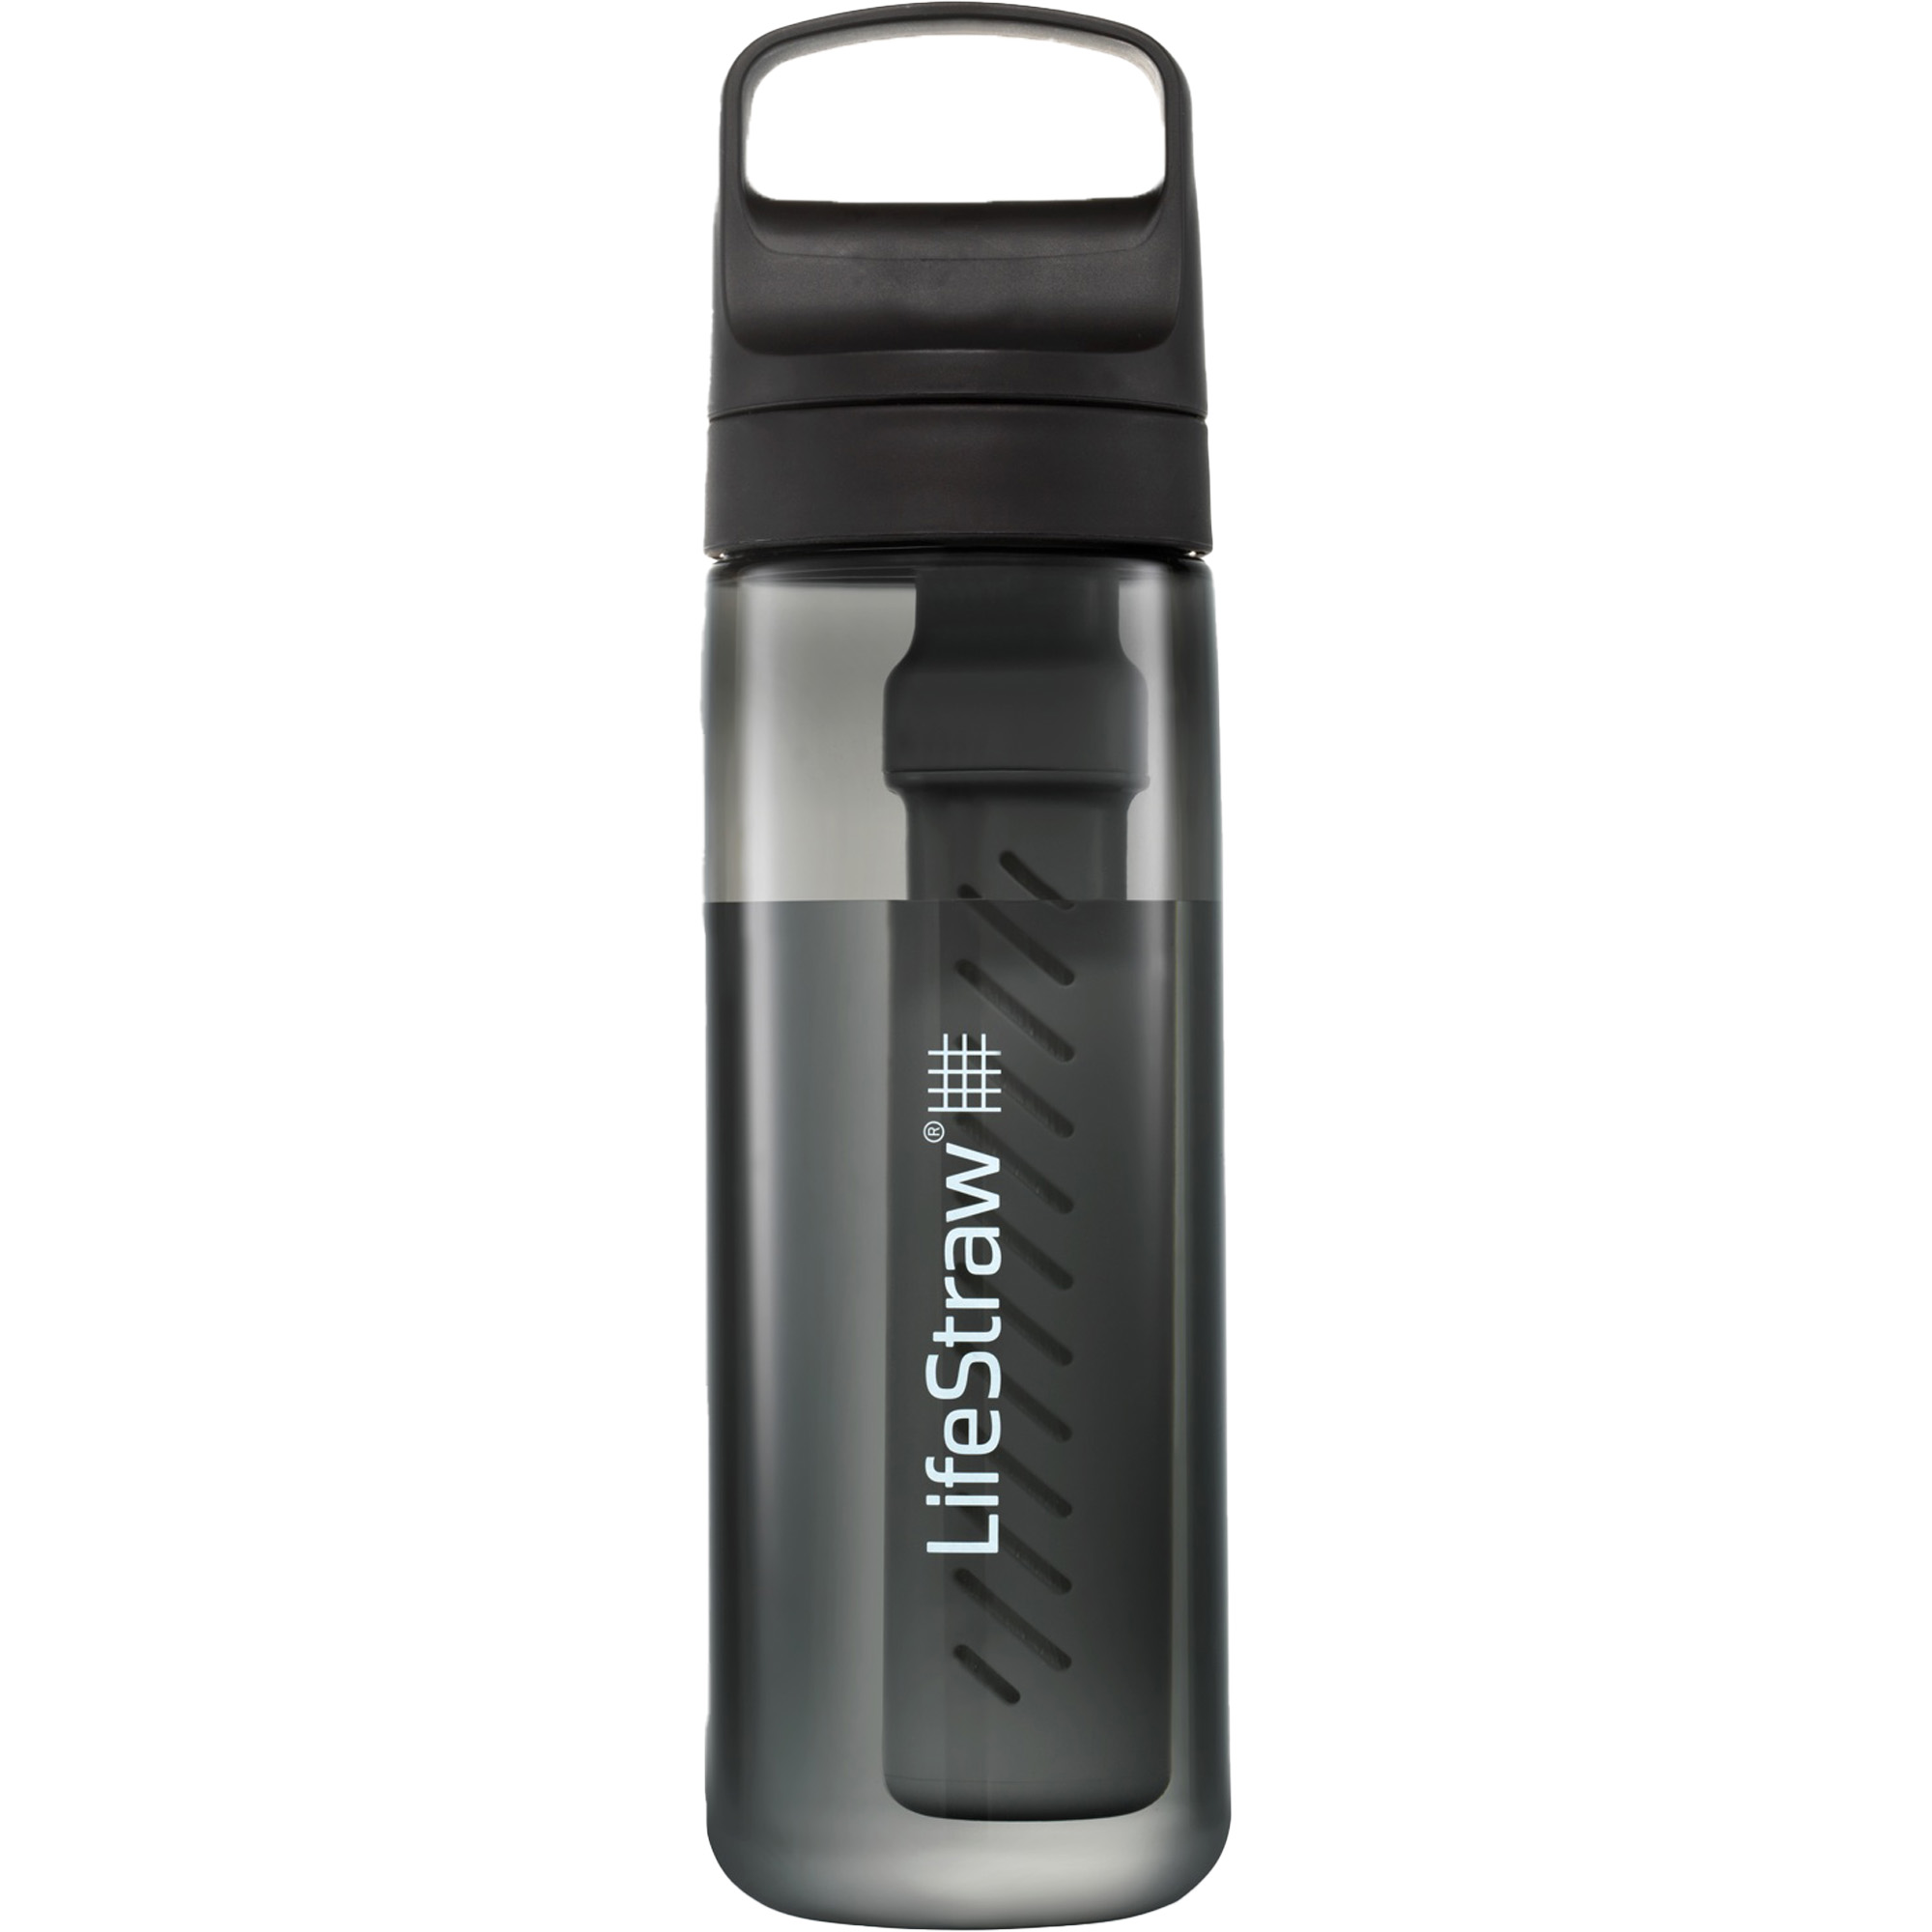 Lifestraw Go 650ml Travel Water Filter Bottle